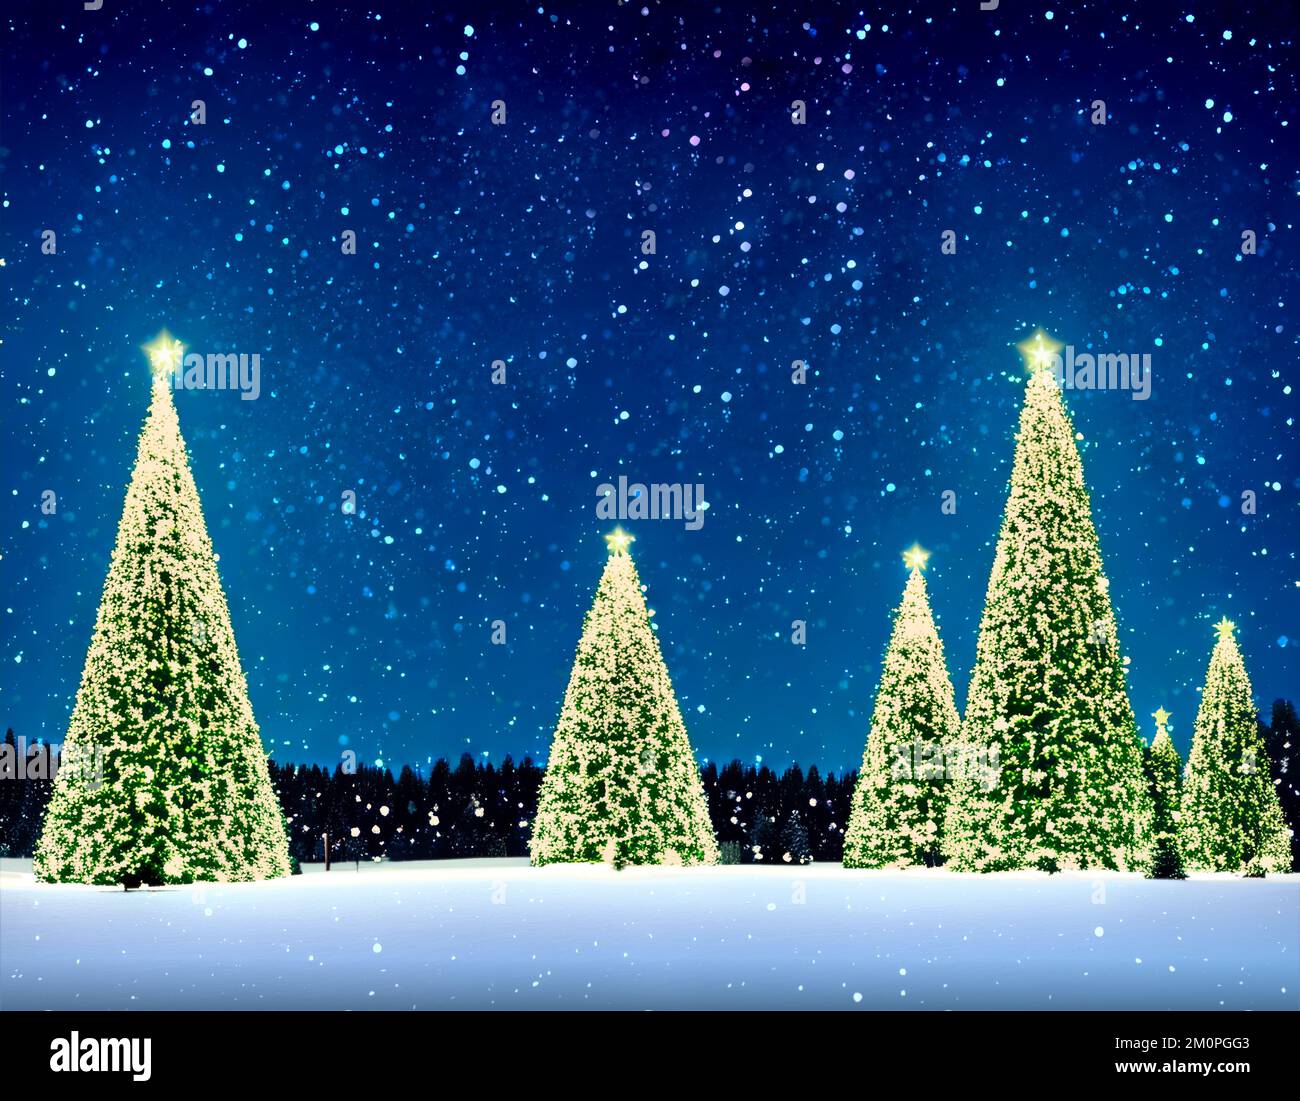 Weihnachtslandschaft - Bäume, Schnee und Sternenhimmel - digitale Illustration Stockfoto